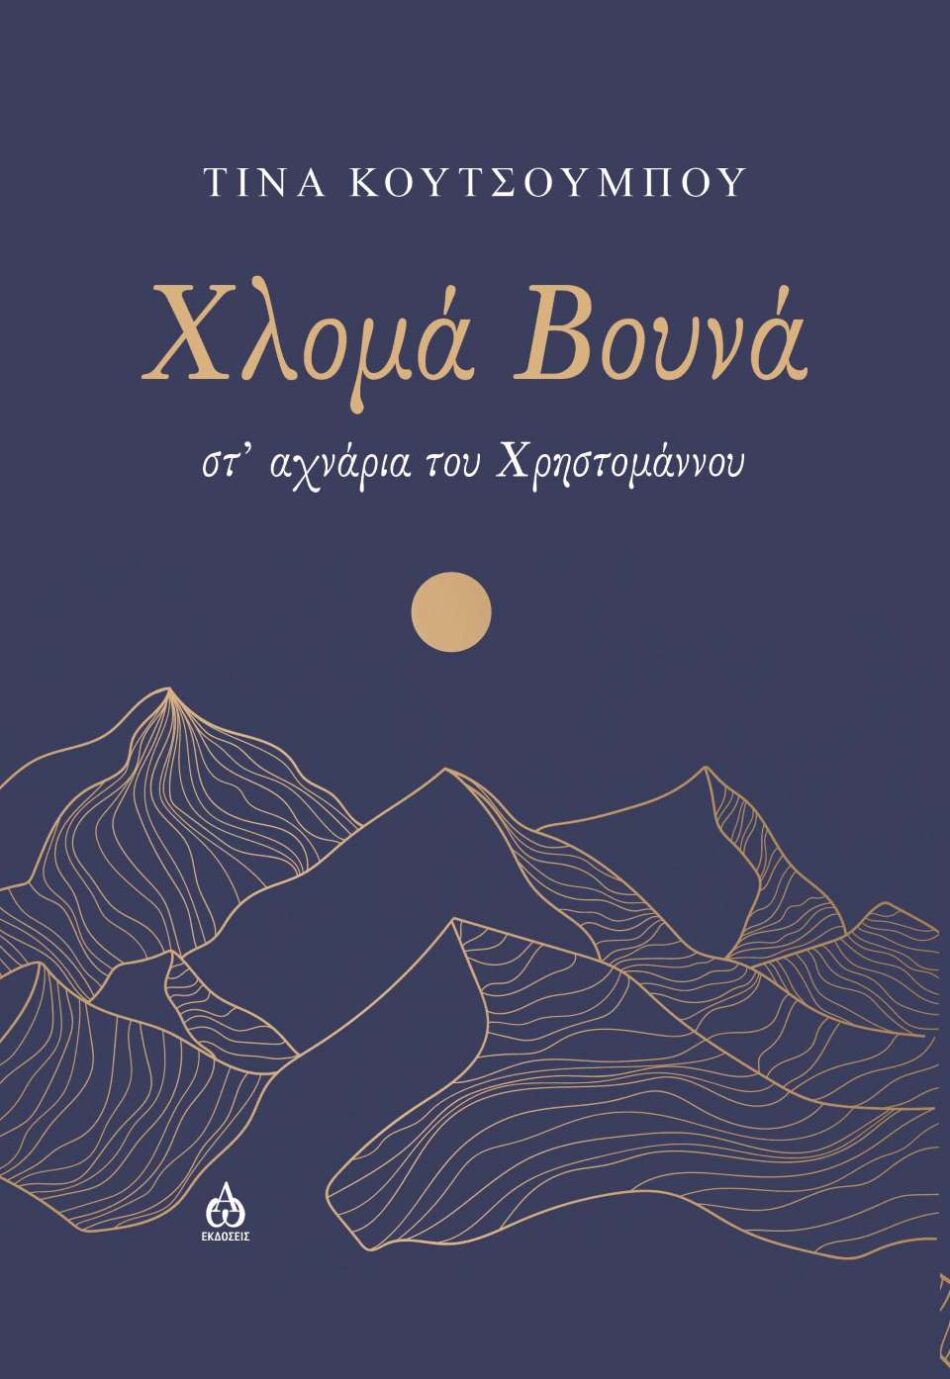 Κυκλοφόρησε το συναρπαστικό μυθιστόρημα της Τίνας Κουτσουμπού &#8220;Χλομά βουνά-στ&#8217; αχνάρια του Χρηστομάννου&#8221; exofyllo hloma vouna 950x1379